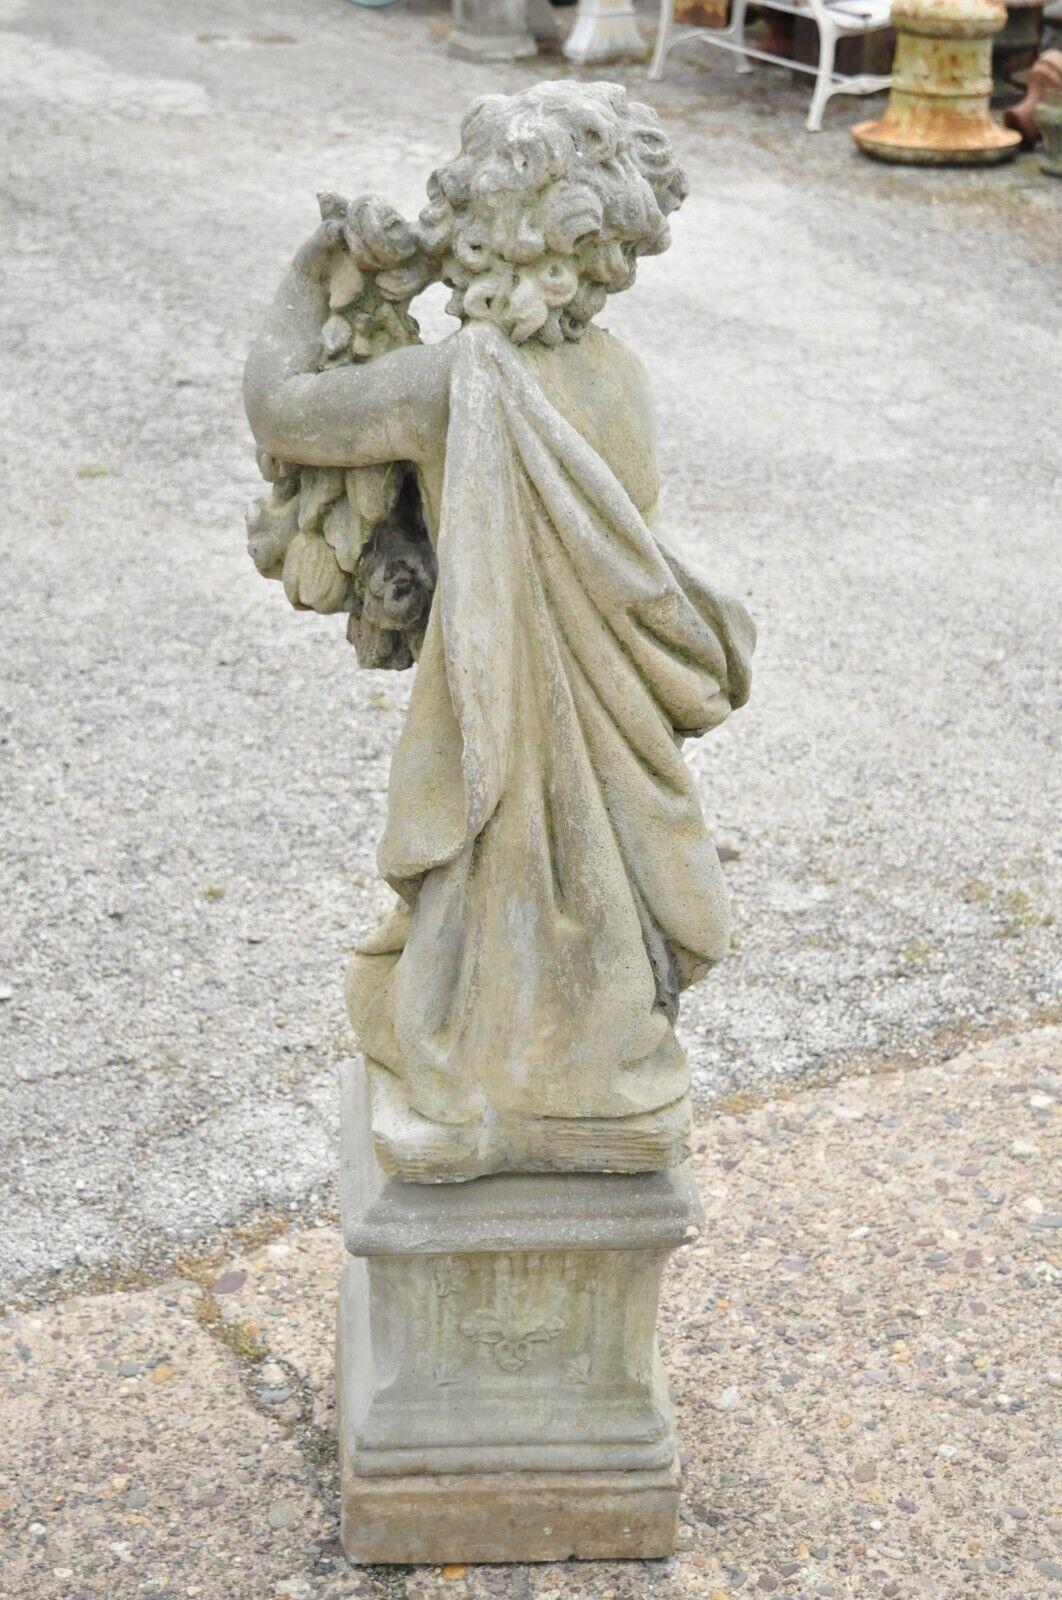 20th Century Vintage Cast Concrete Four Seasons Cherub Garden Statue Ornament on Base